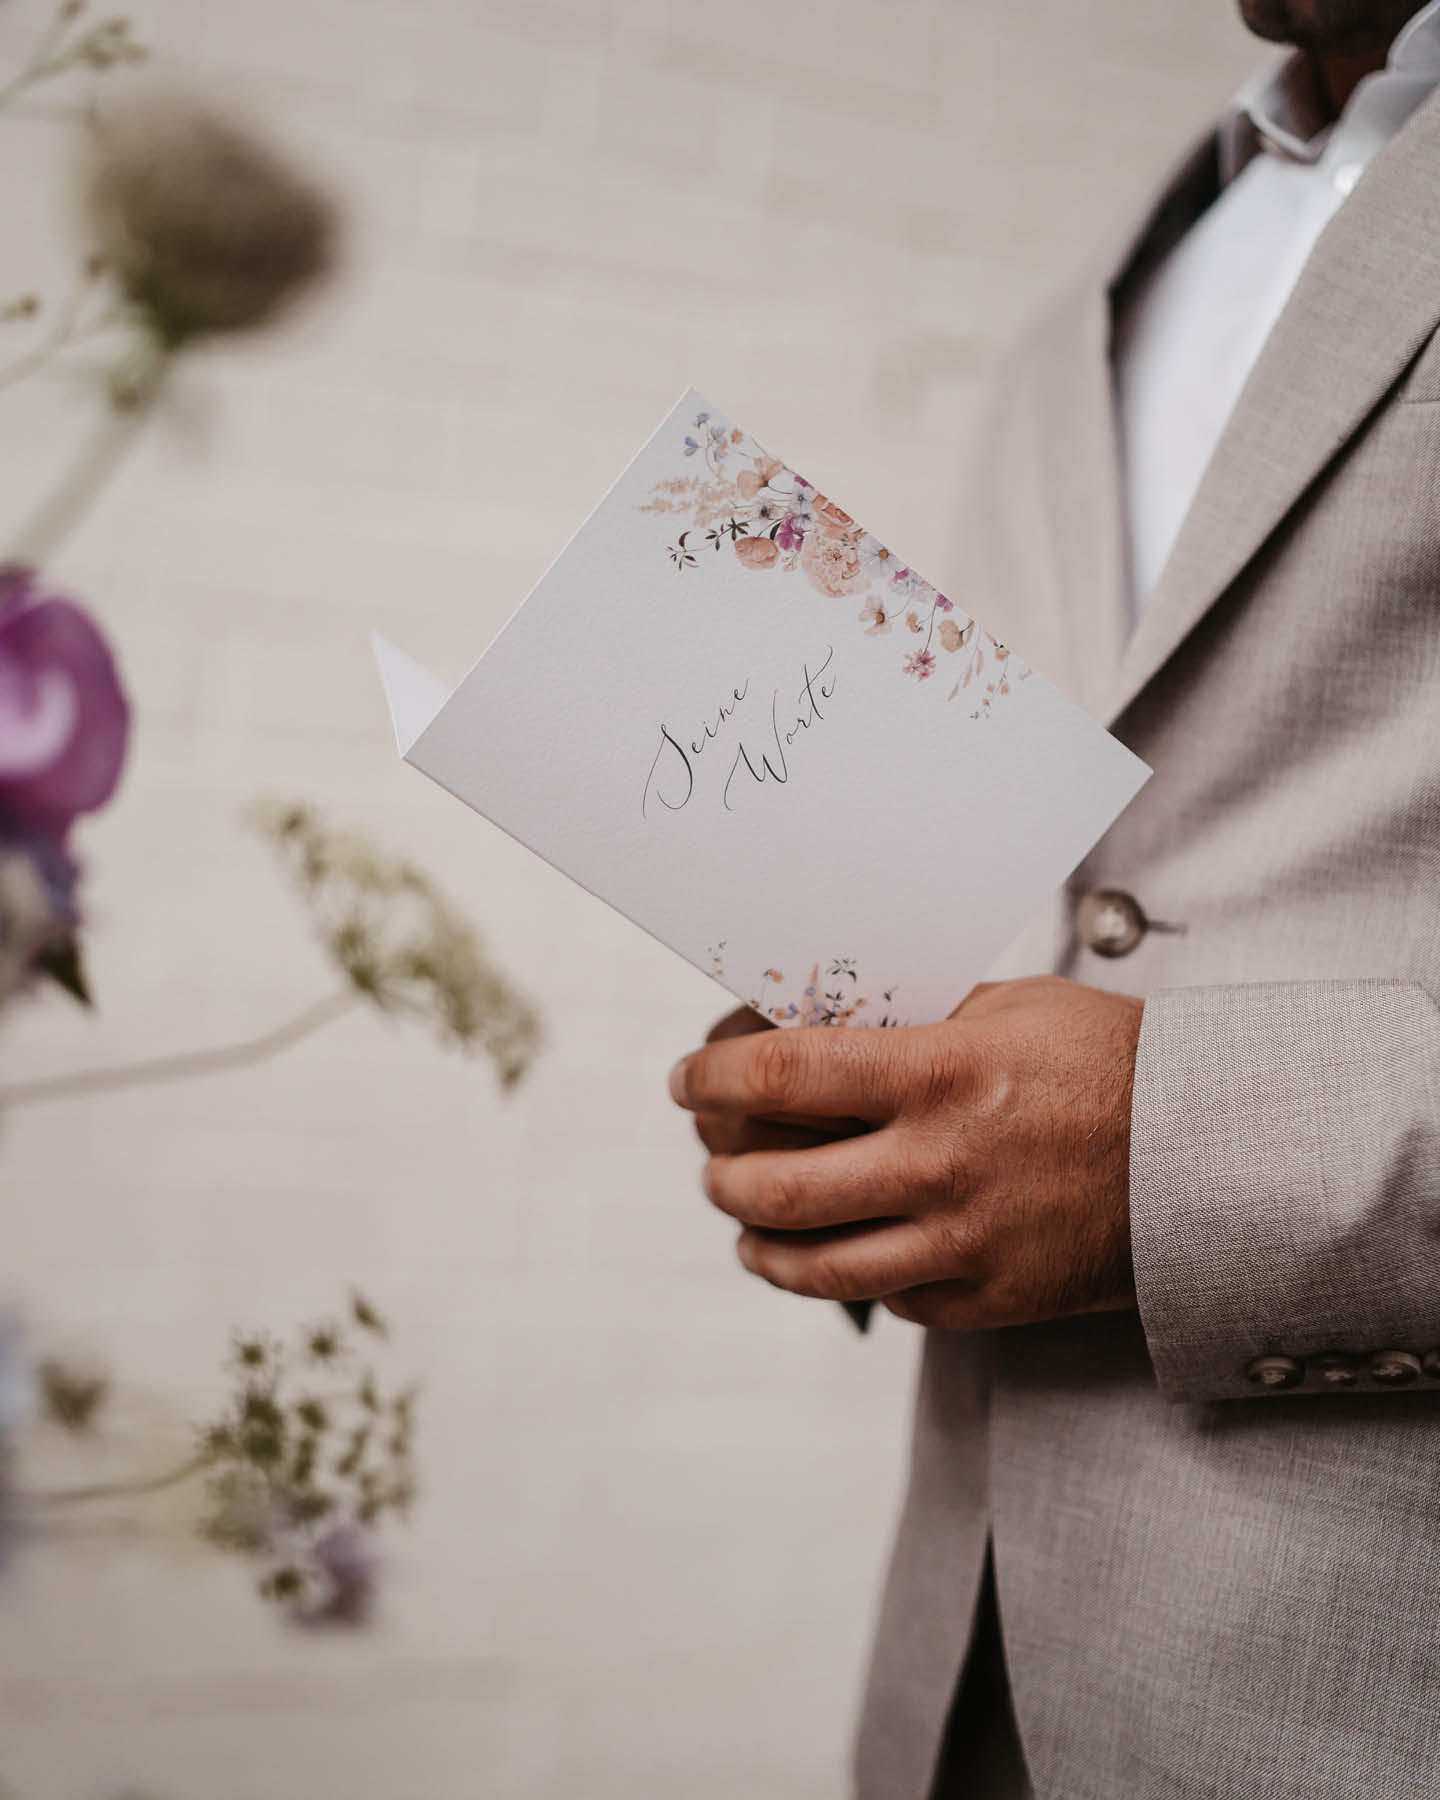 Bräutigam im hellen Anzug hält Ehegelübde als Karte mit floralen Elementen in der Hand.